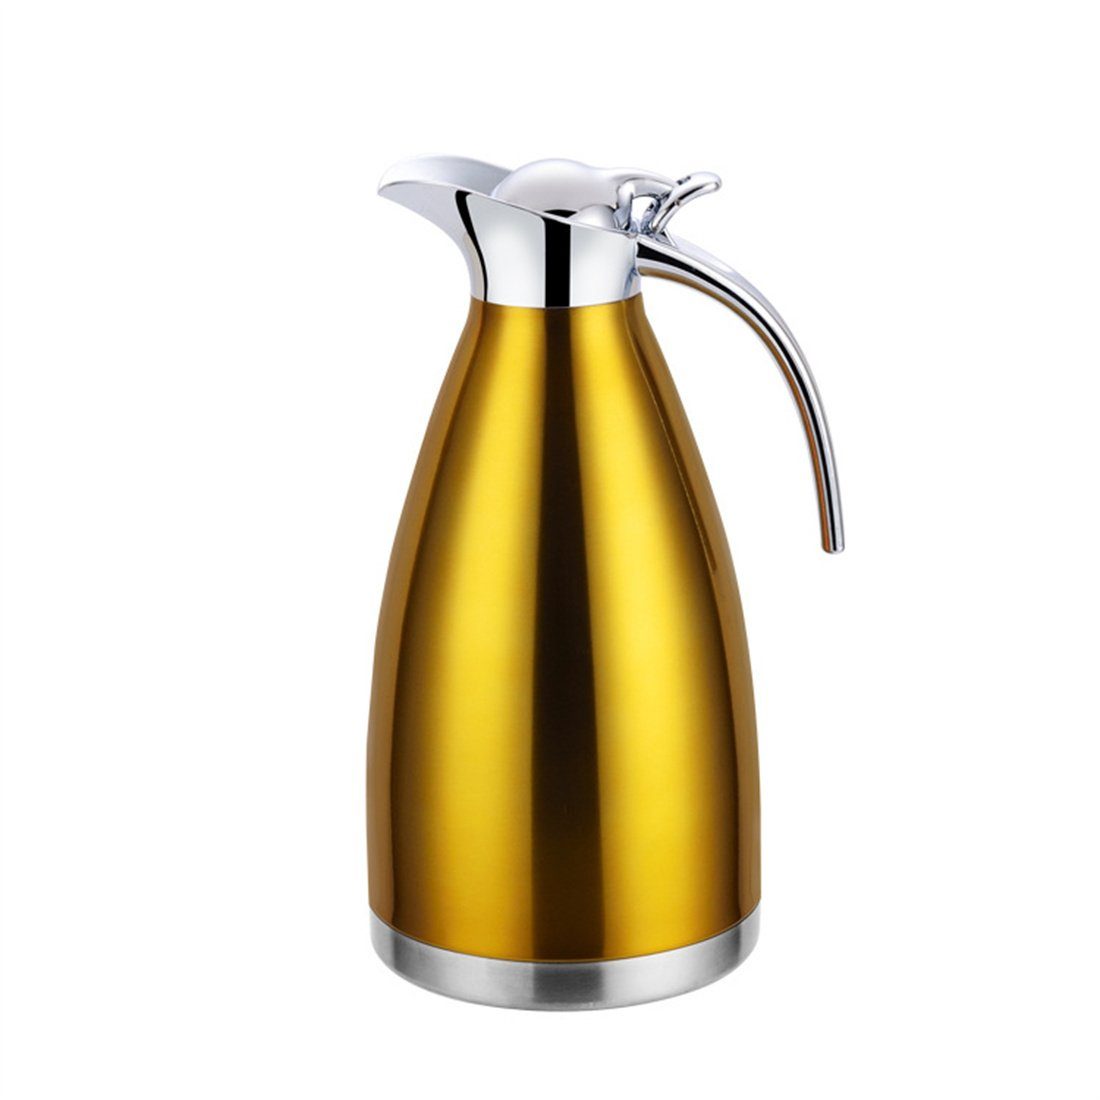 DÖRÖY Isolierkanne Isolierter Heißwasserkocher, Edelstahl-Wasserkocher, Kaffeekanne Gold 2.0L